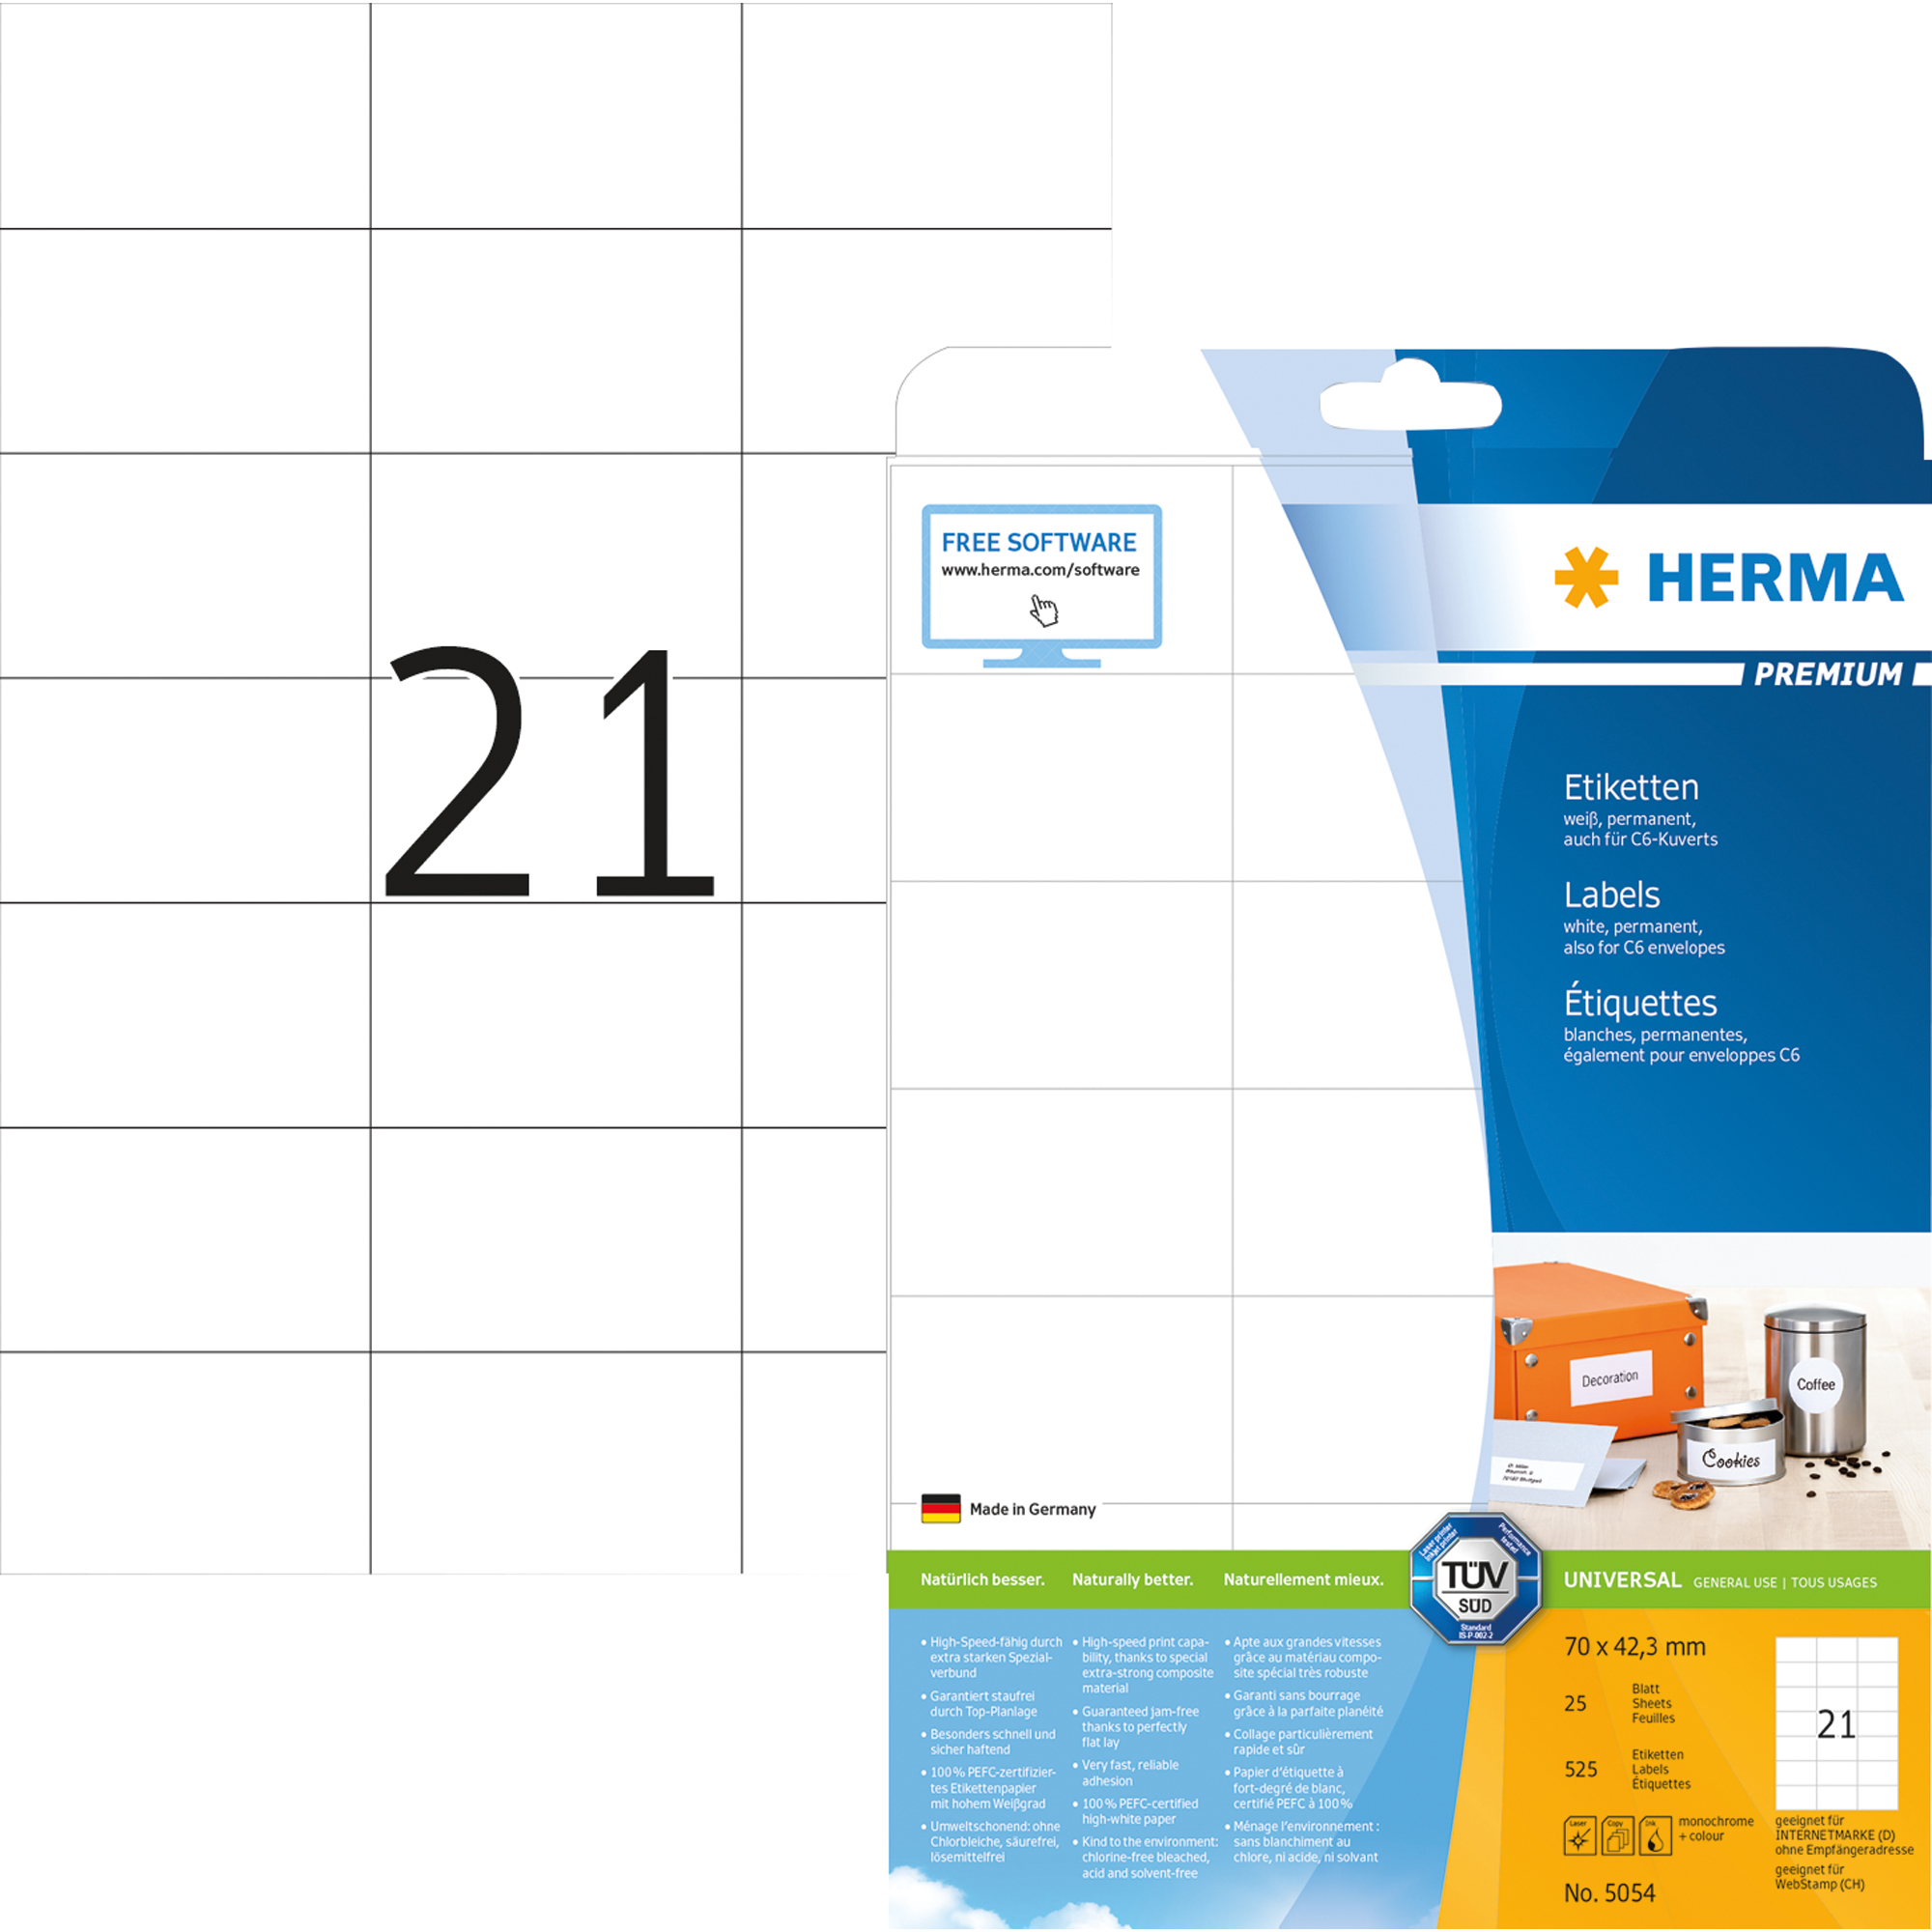 HERMA Universaletikett Premium weiß, 70 x 42,3 mm, 525 St.